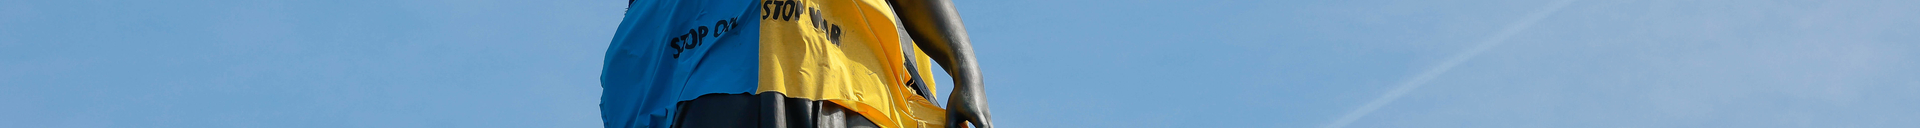 PARIS: La statue place de la Republique porte les couleurs du drapeau ukrainien pour protester contre l invasion militaire russe